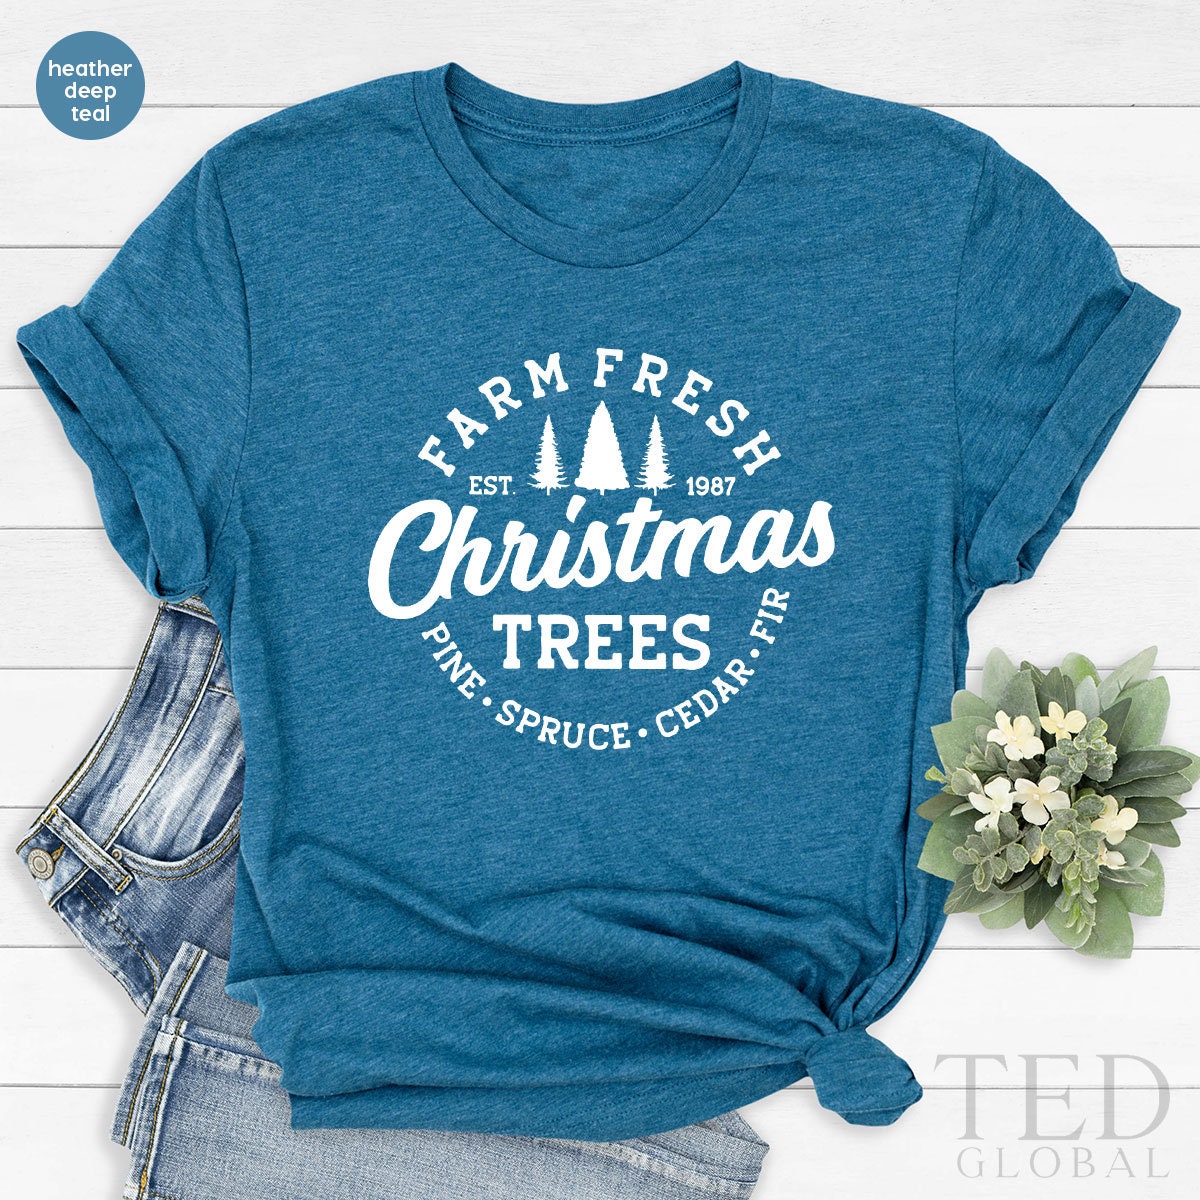 Cute Farm Fresh T-Shirt, Funny Christmas Trees T Shirt, Christmas Family Tee, Pine Spruce Cedar Fır Shirts, Xmas TShirt, Gift For Christmas - Fastdeliverytees.com